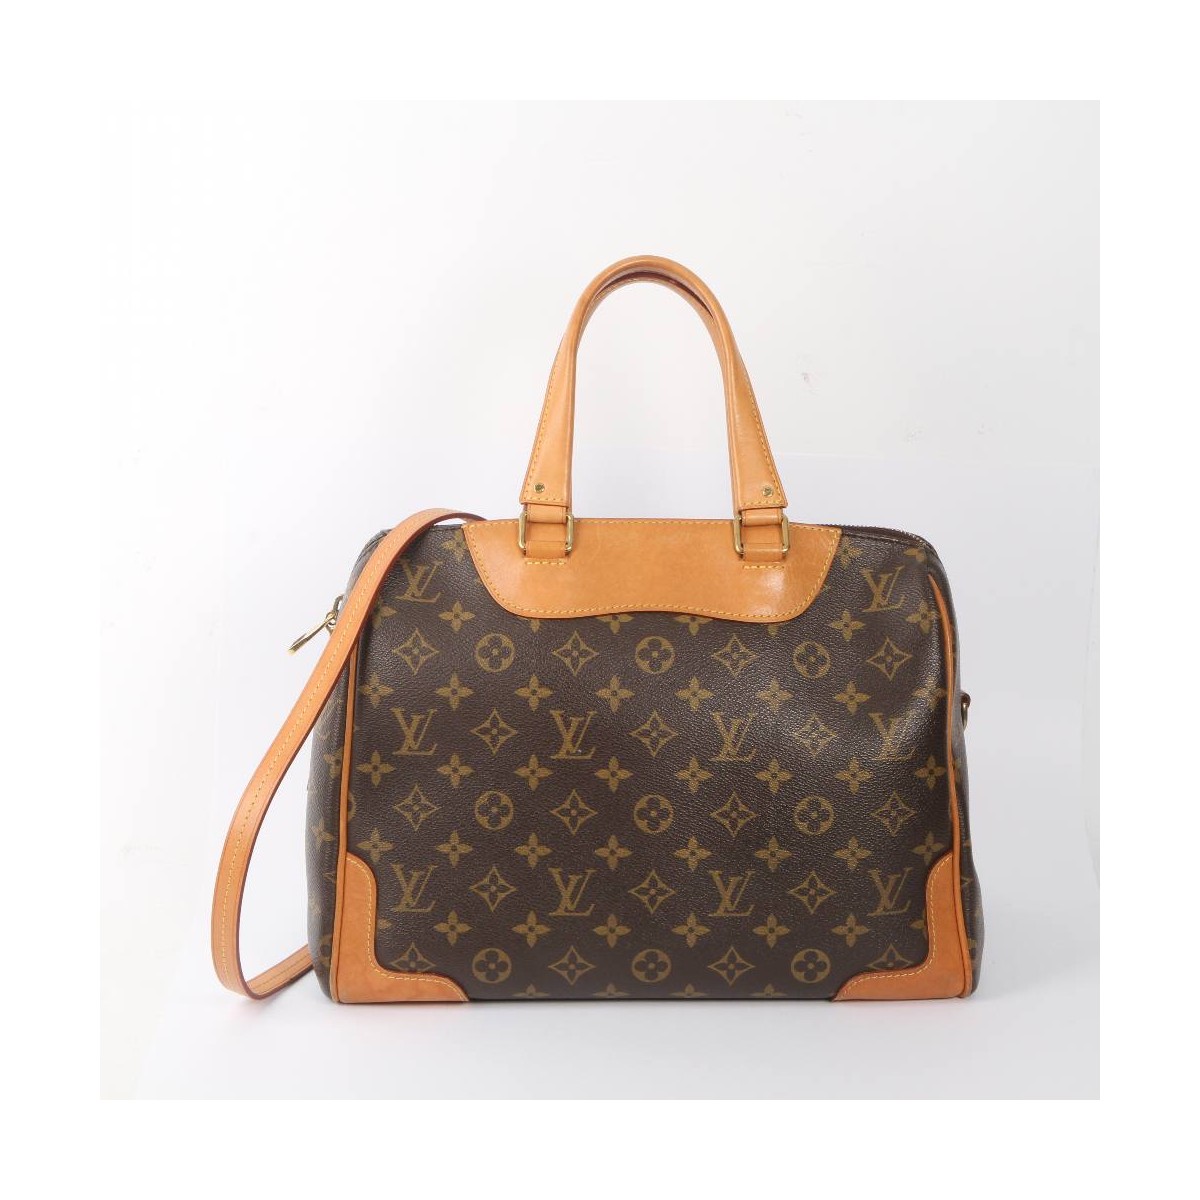 Mujer compra bolsa Louis Vuitton en 500 pesos y la vende en 50 mil